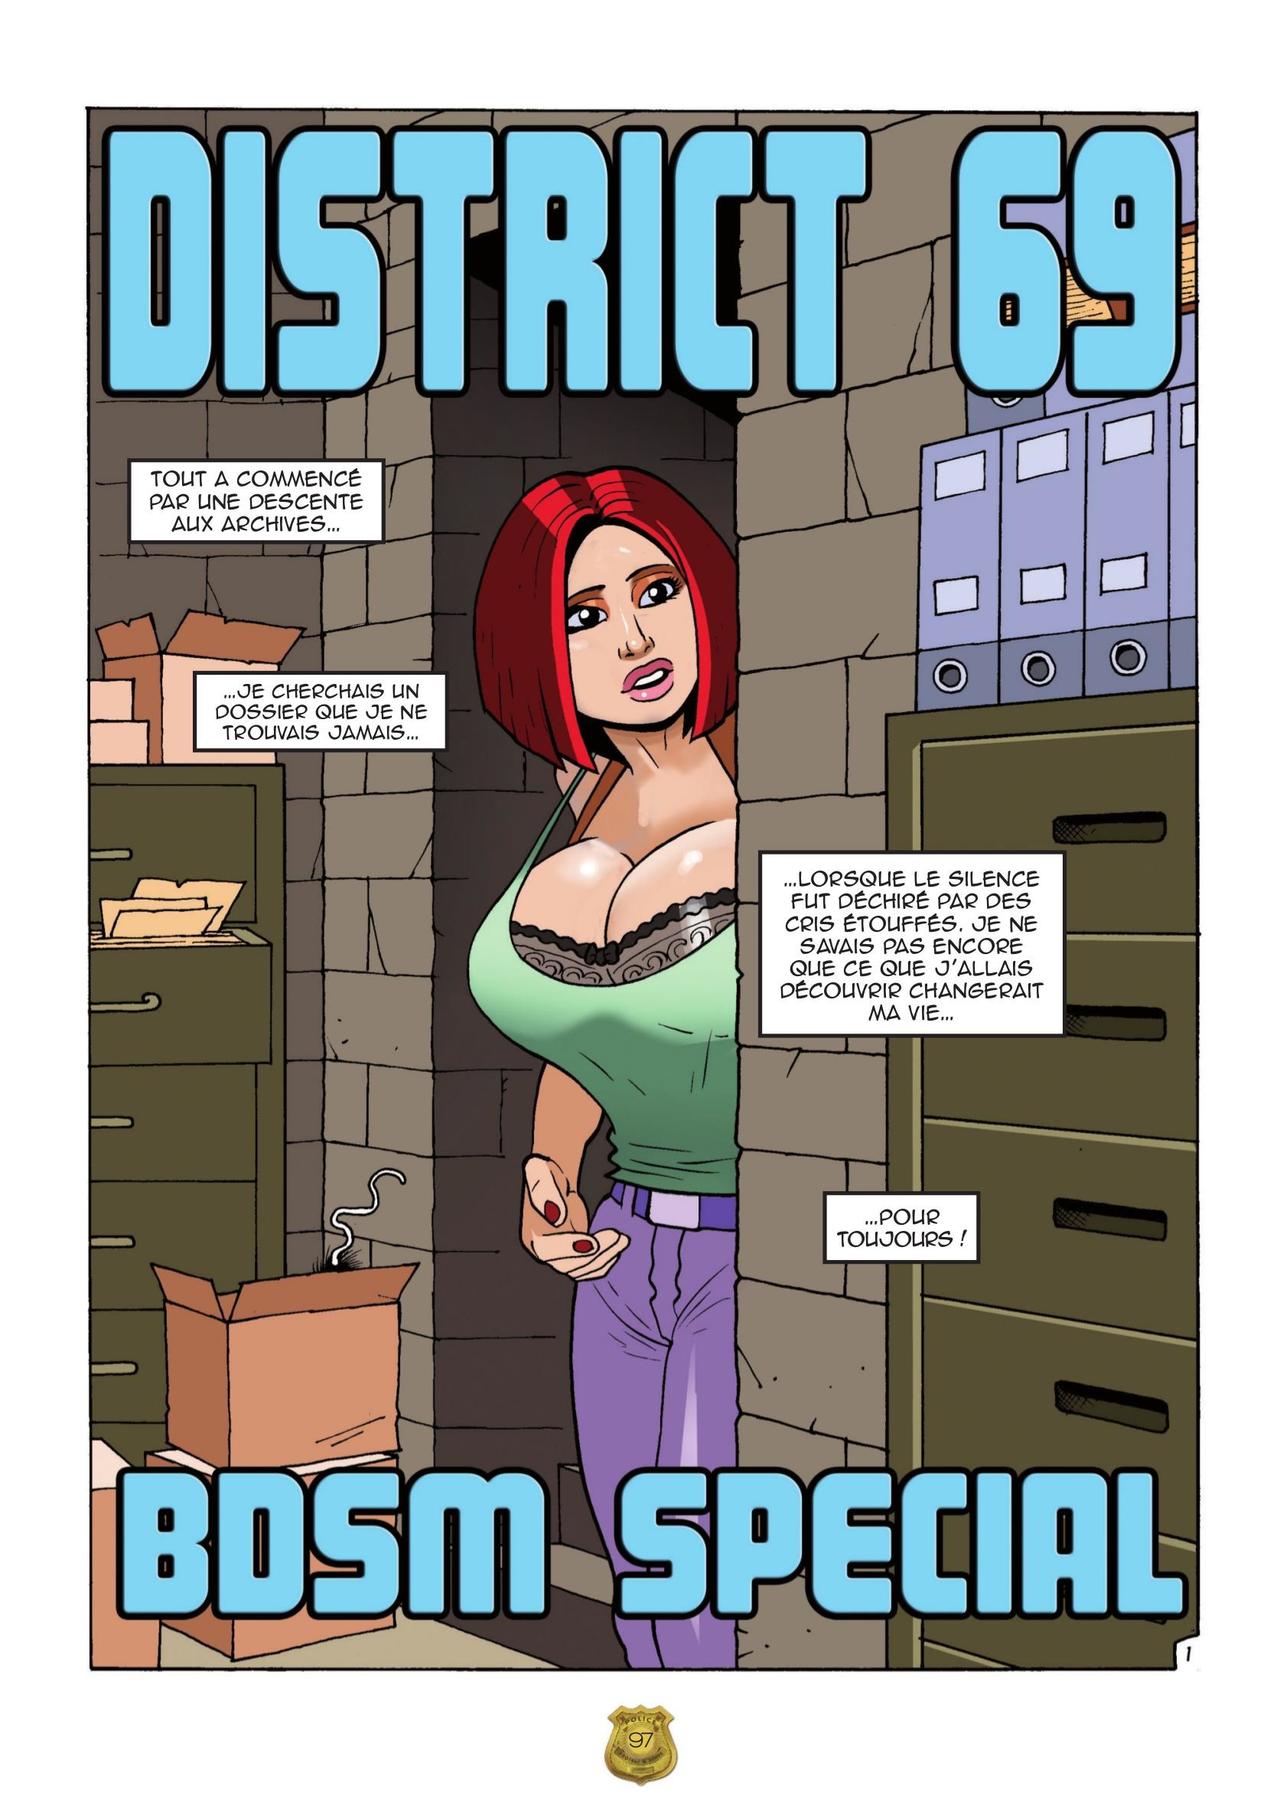 District 69 numero d'image 98